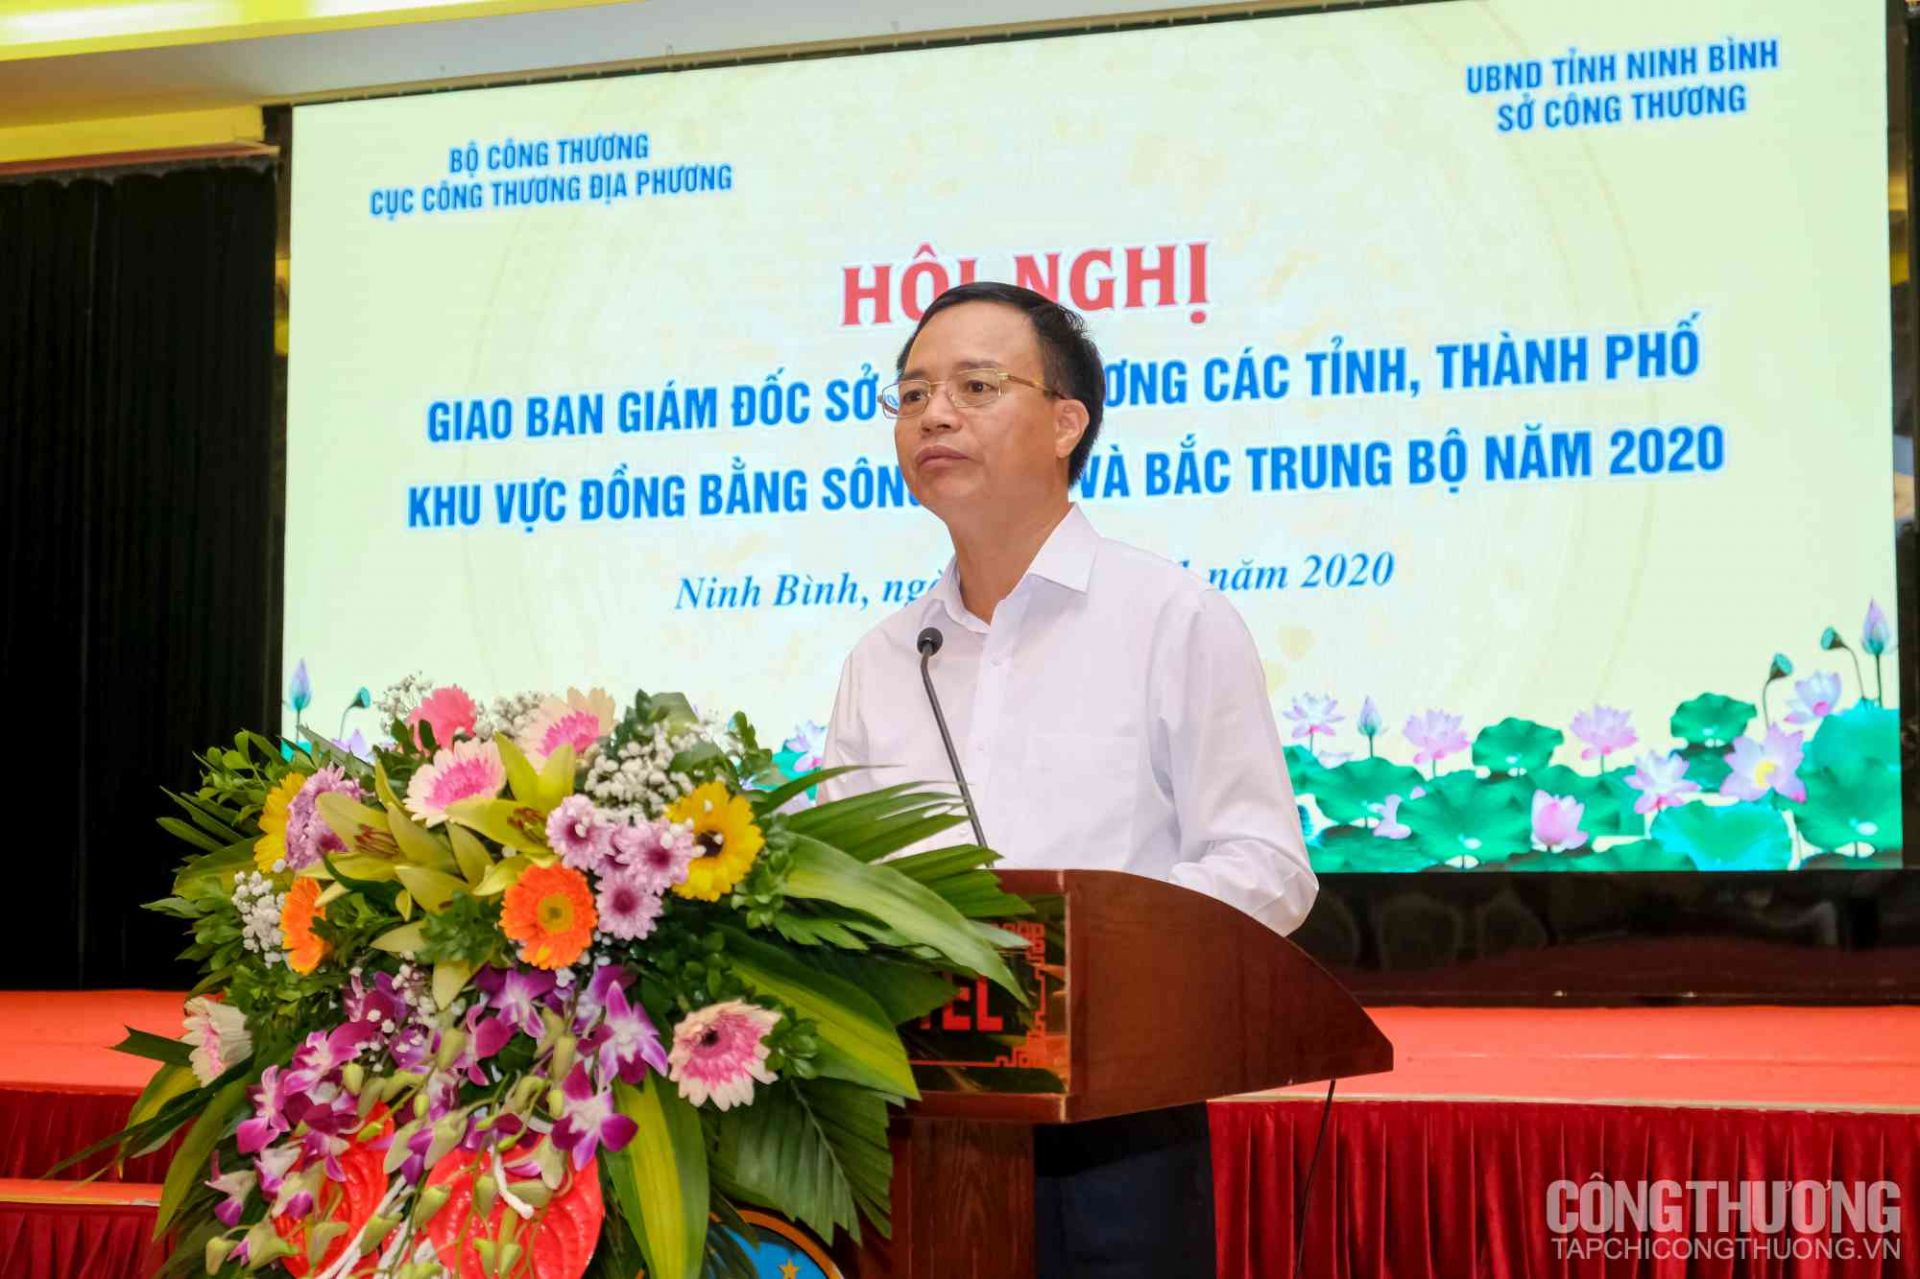 Ông Ngô Quang Trung - Cục trưởng Cục Công Thương địa phương, Bộ Công Thương báo cáo tóm tắt về tình hình phát triển công nghiệp - thương mại khu vực đồng bằng sông Hồng và Bắc Trung Bộ 10 tháng đầu năm 2020